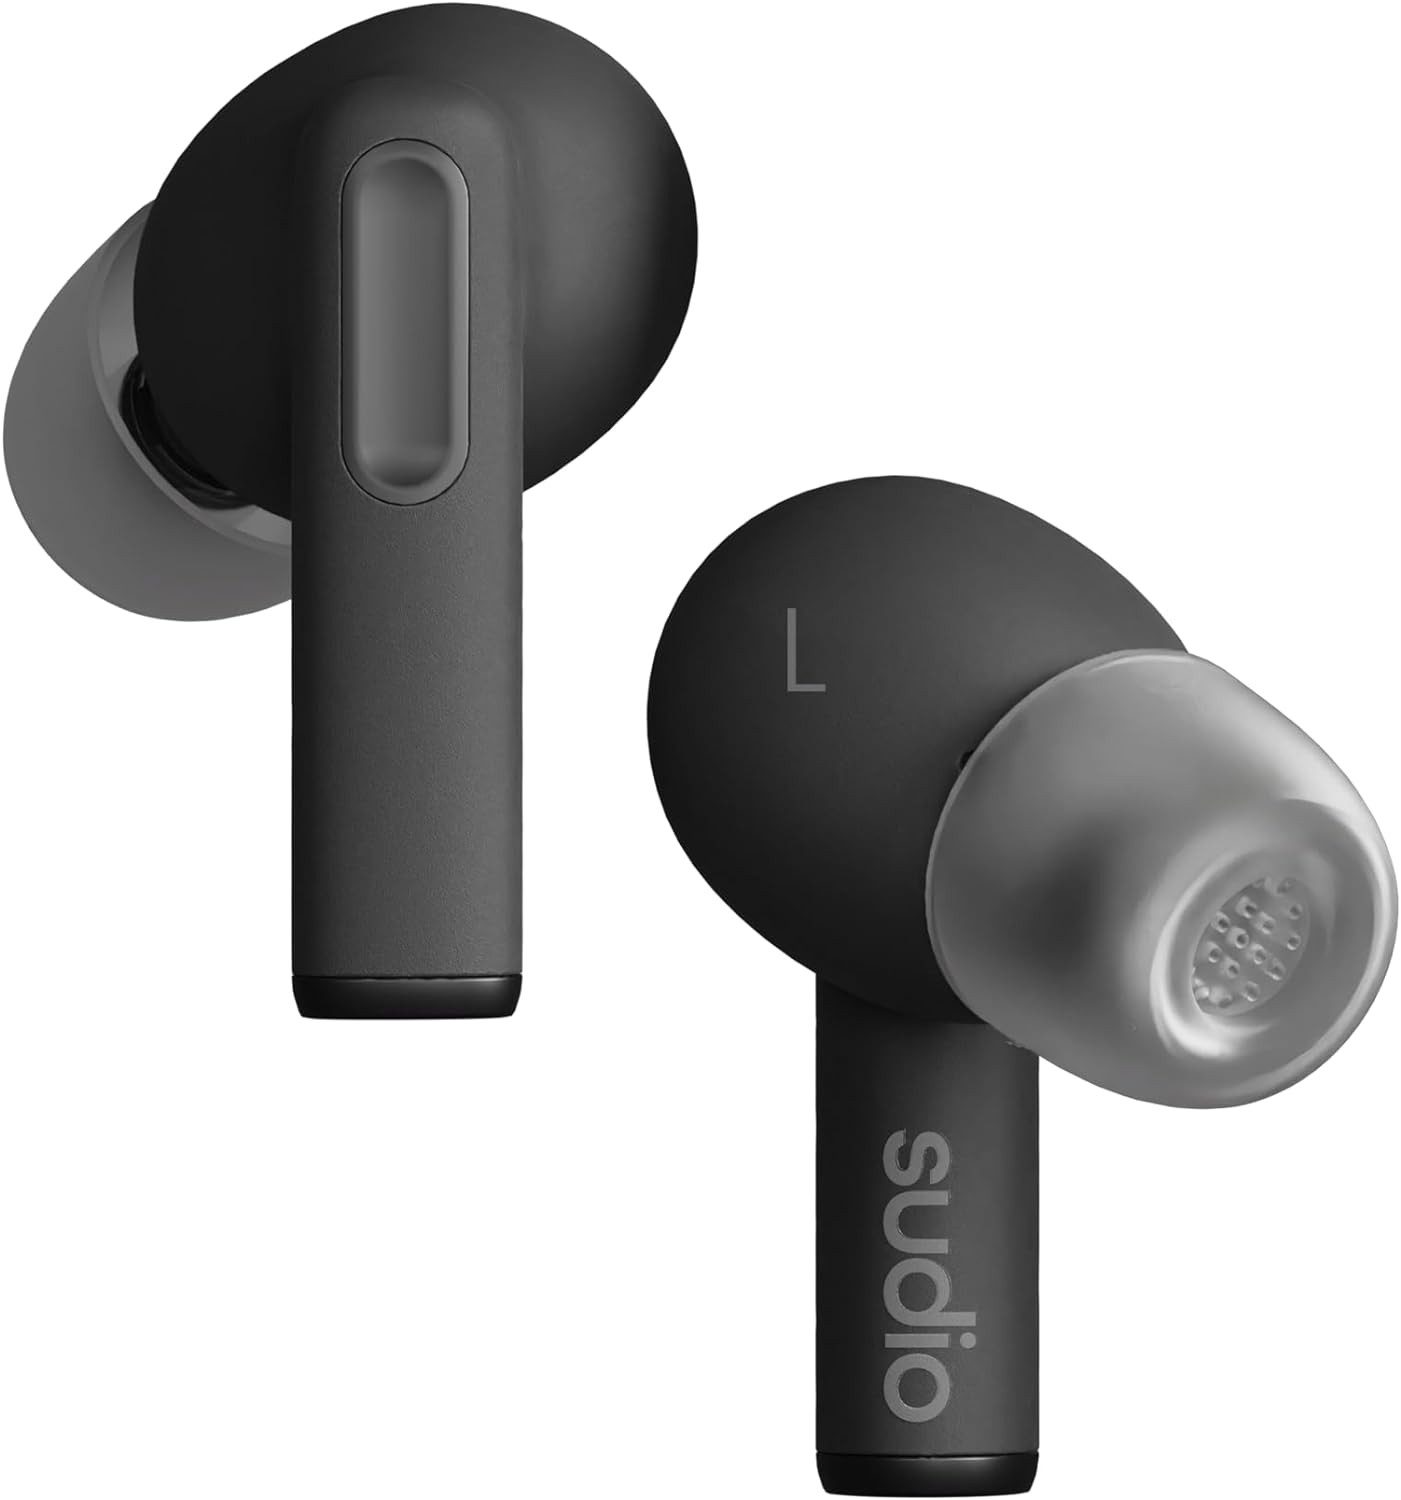 sudio Touch Control mit IPX4 geschützt In-Ear-Kopfhörer (Einfache Handhabung und bequemer Sitz für stundenlangen Musikgenuss ohne Unterbrechung., mit Aktive Geräuschunterdrückung, robustes Design, lange Akkulaufzeit)